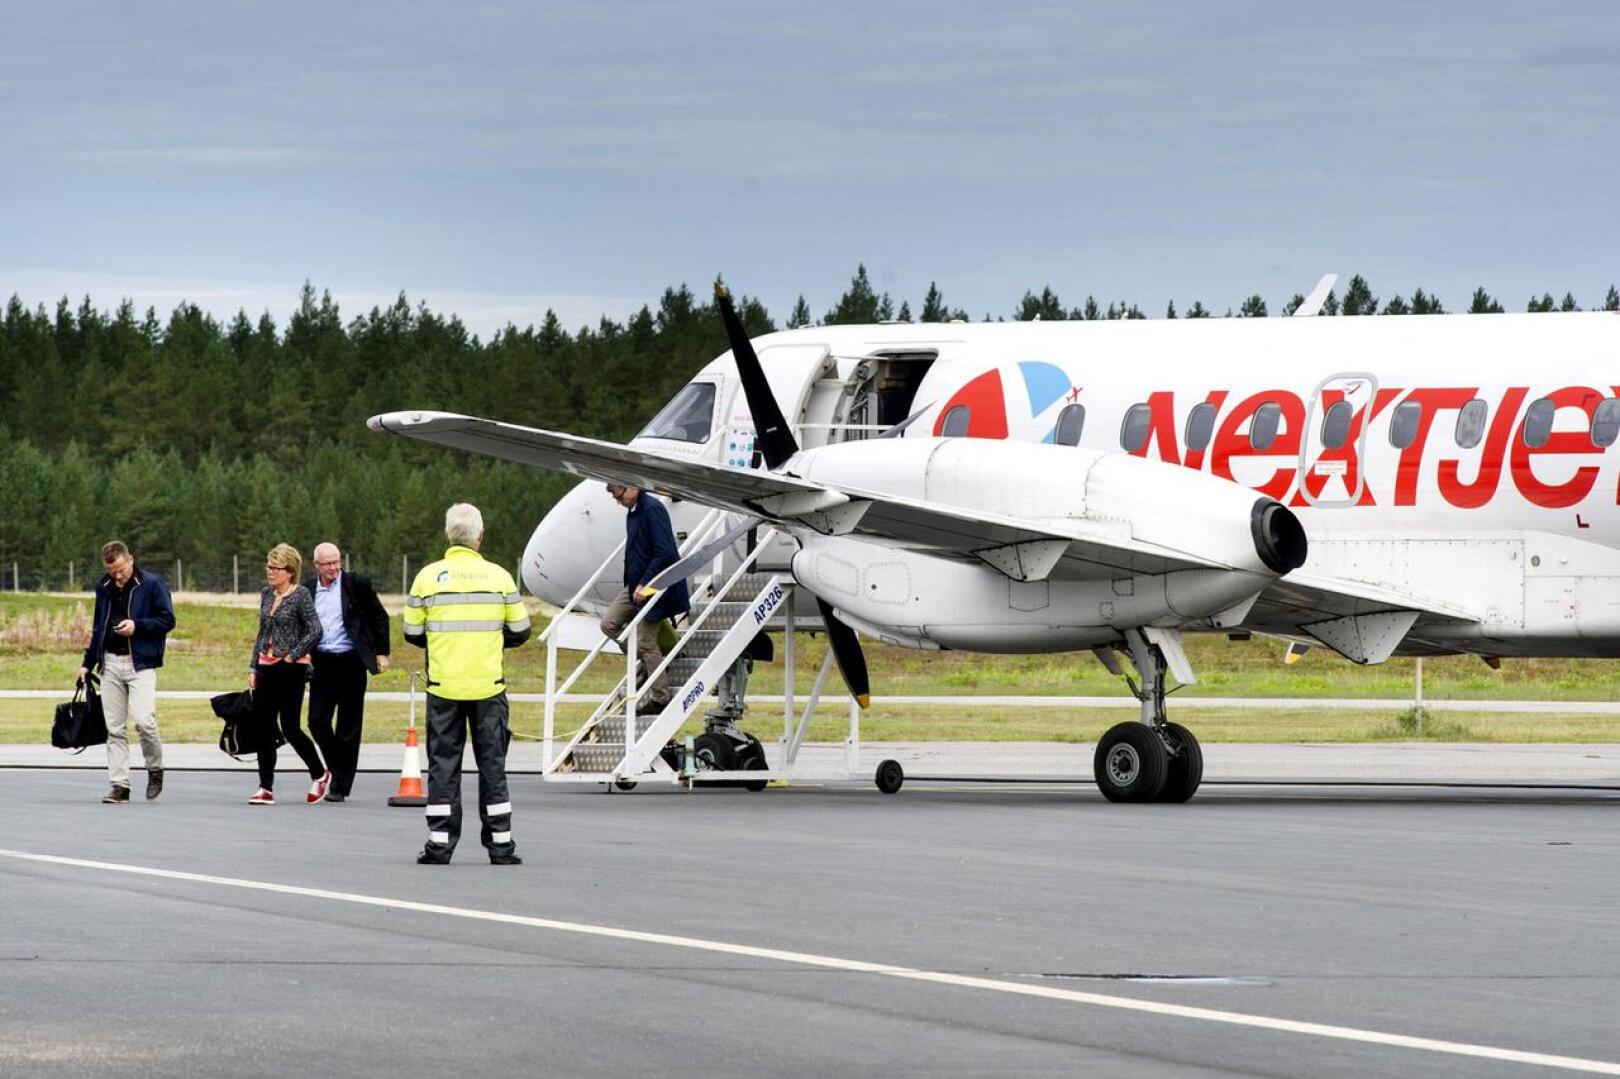 Ruotsalainen lentoyhtiö Nextjet liikennöi Kokkola-Pietarsaaren lentokentältä Ruotsiin viime toukokuuhun saakka, jolloin yhtiö hakeutui konkurssiin.